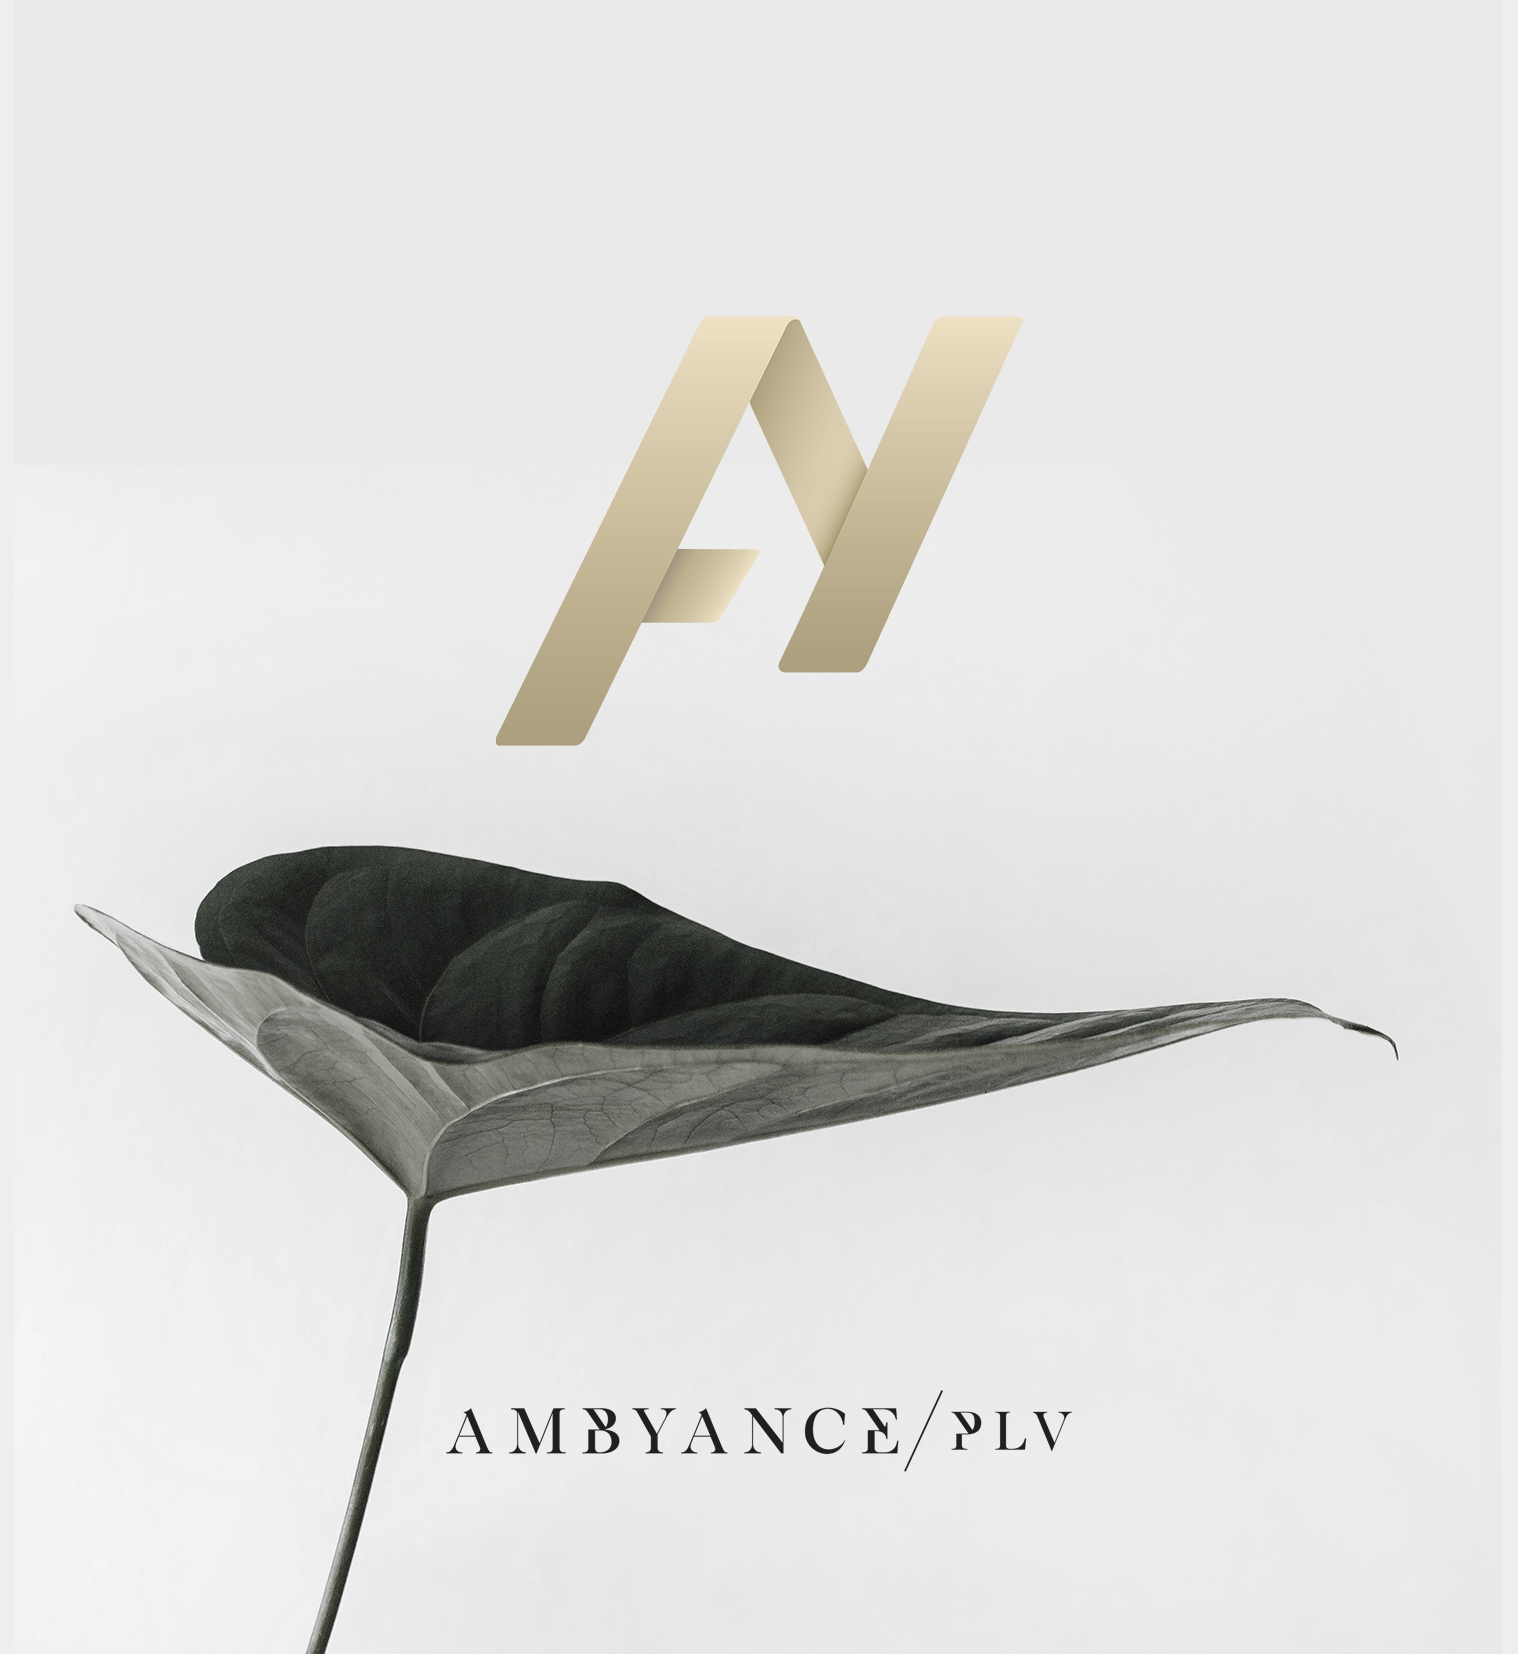 Ambyance PLV logo